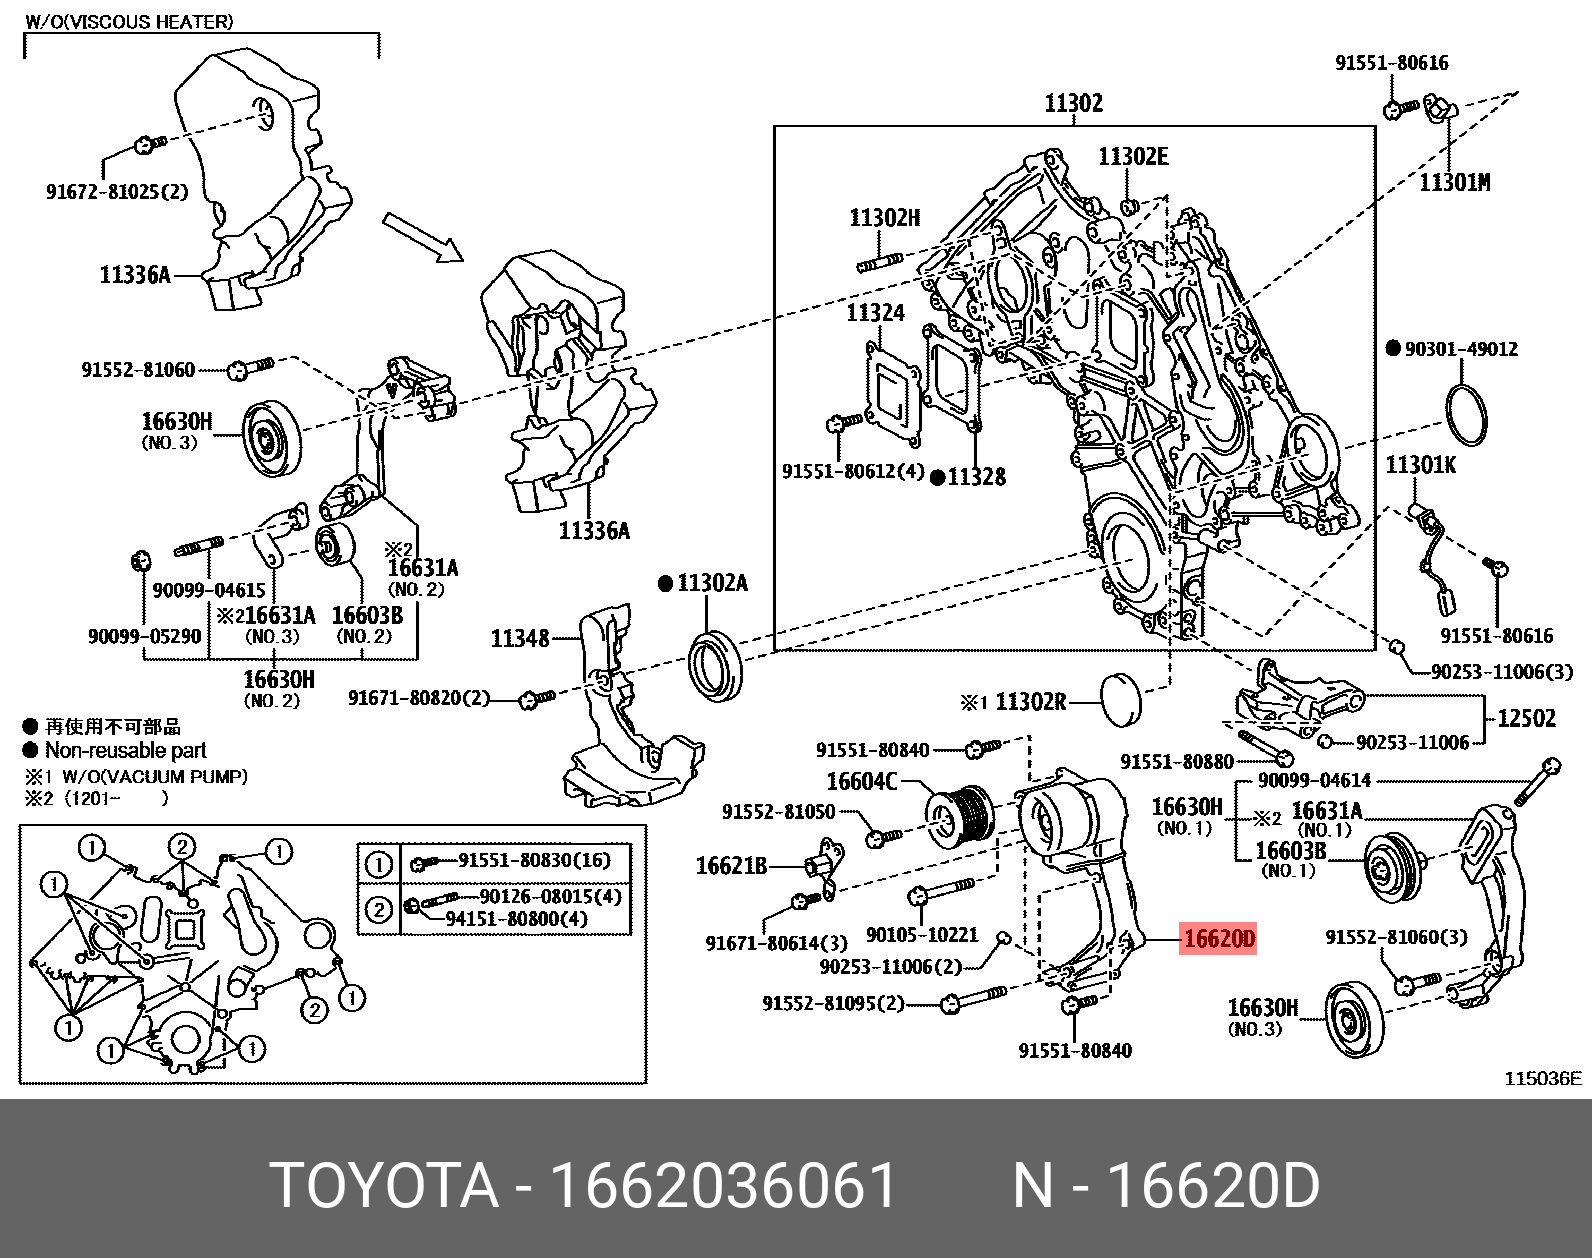 Ролик натяжной навесного оборудования - Toyota 16620-36061